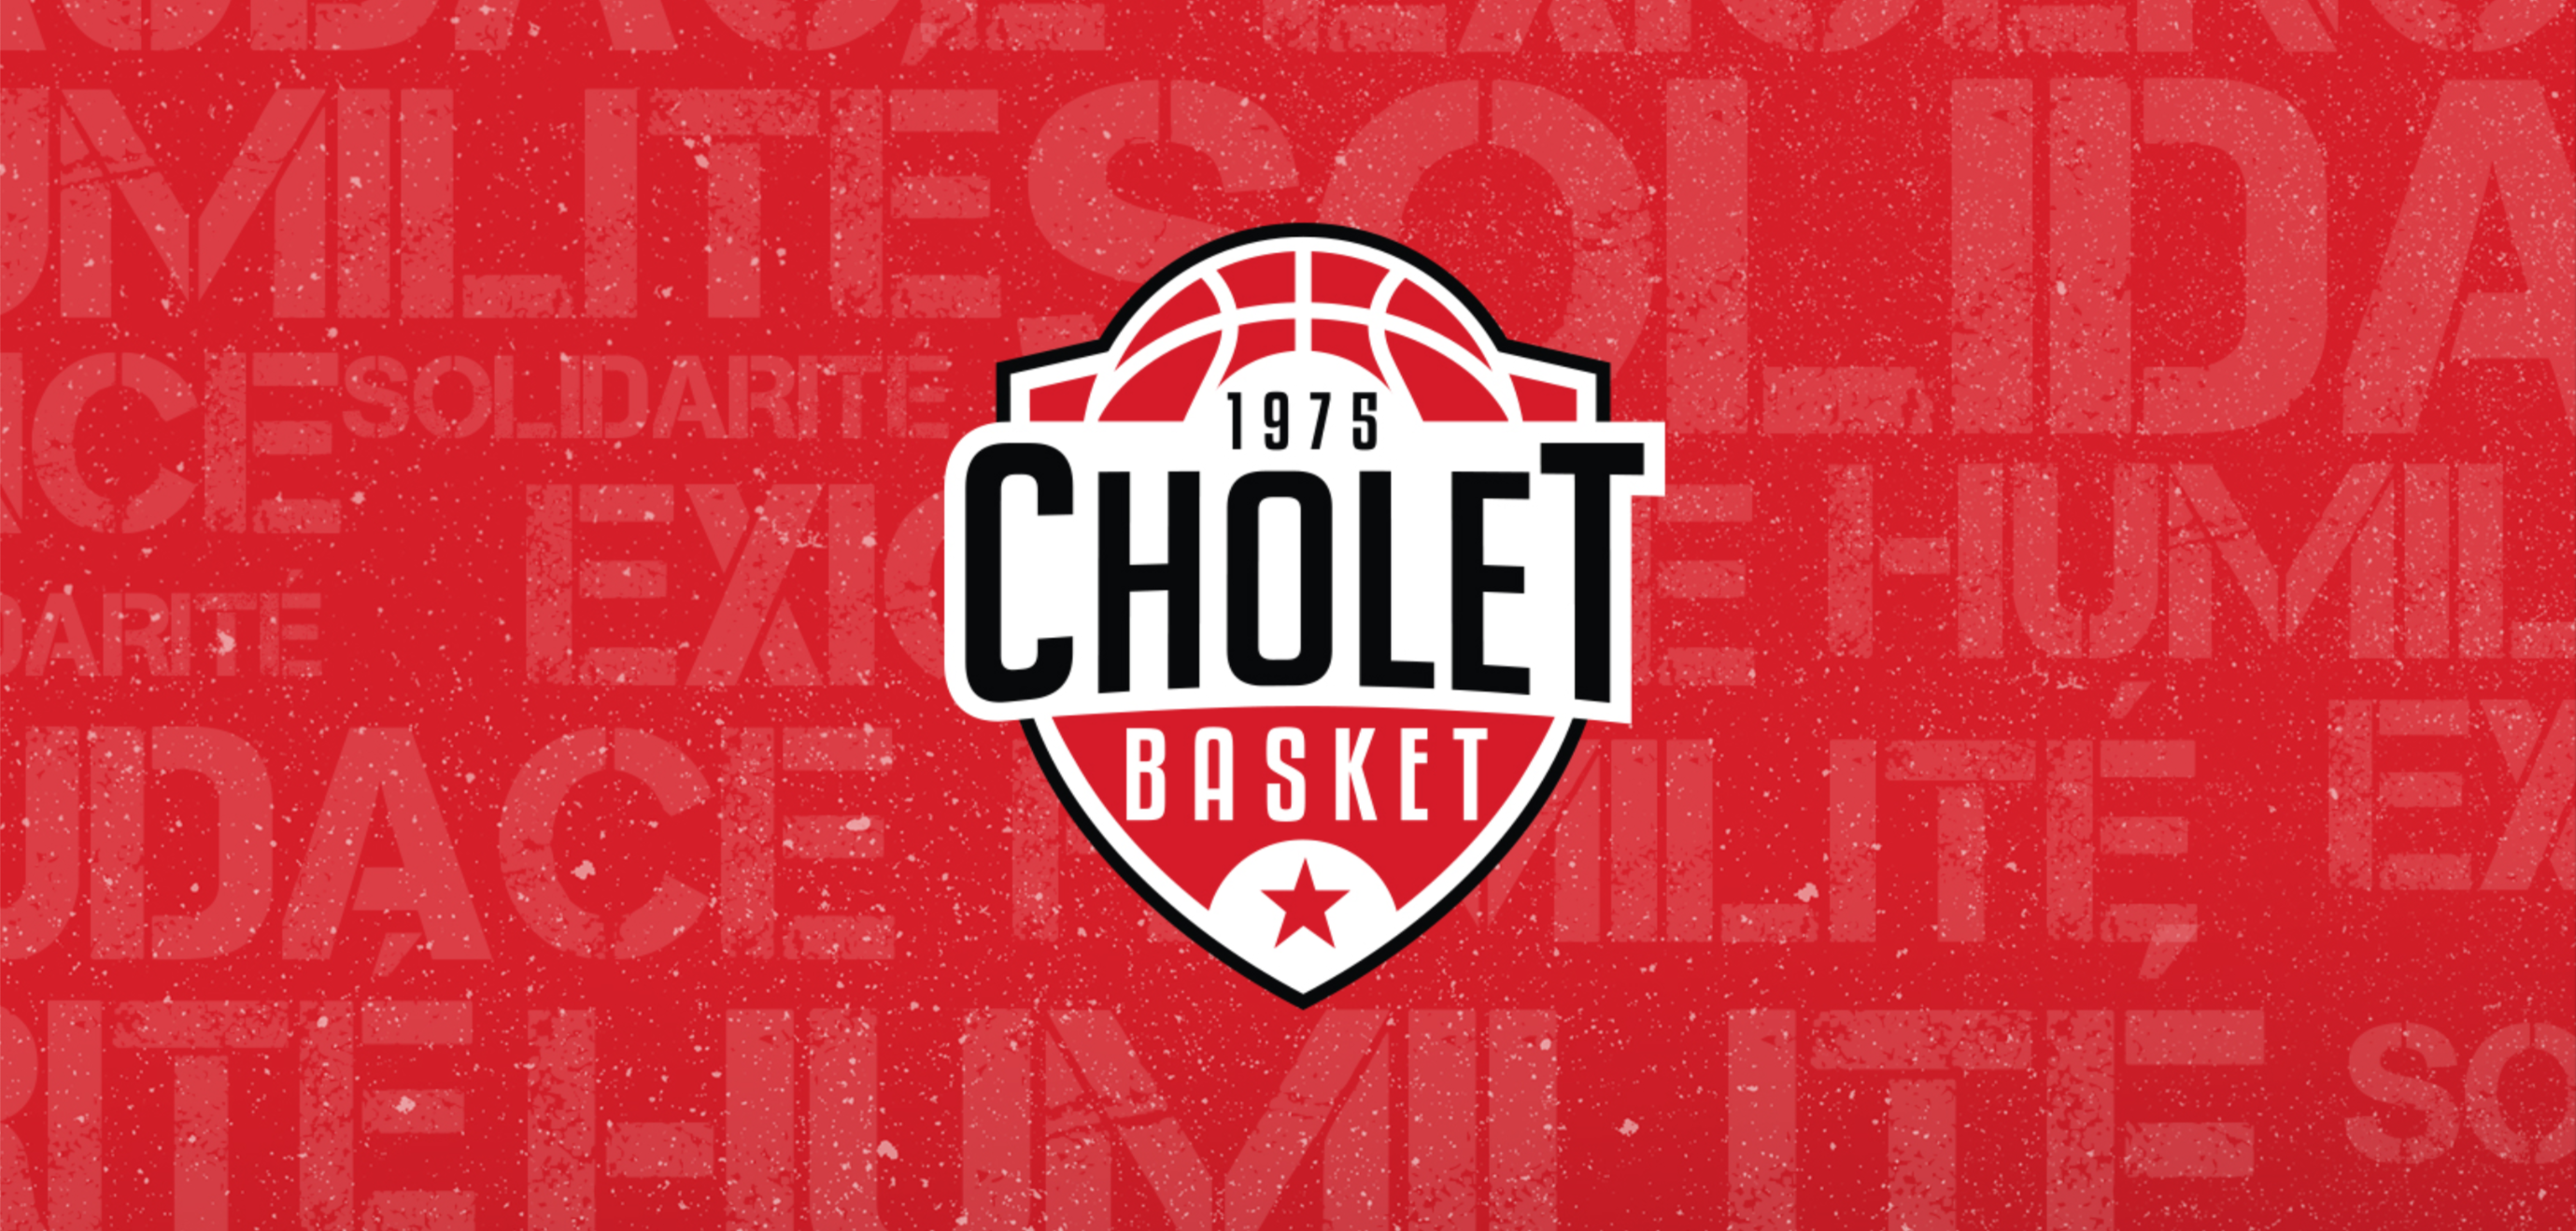 Cholet Basket bandeau